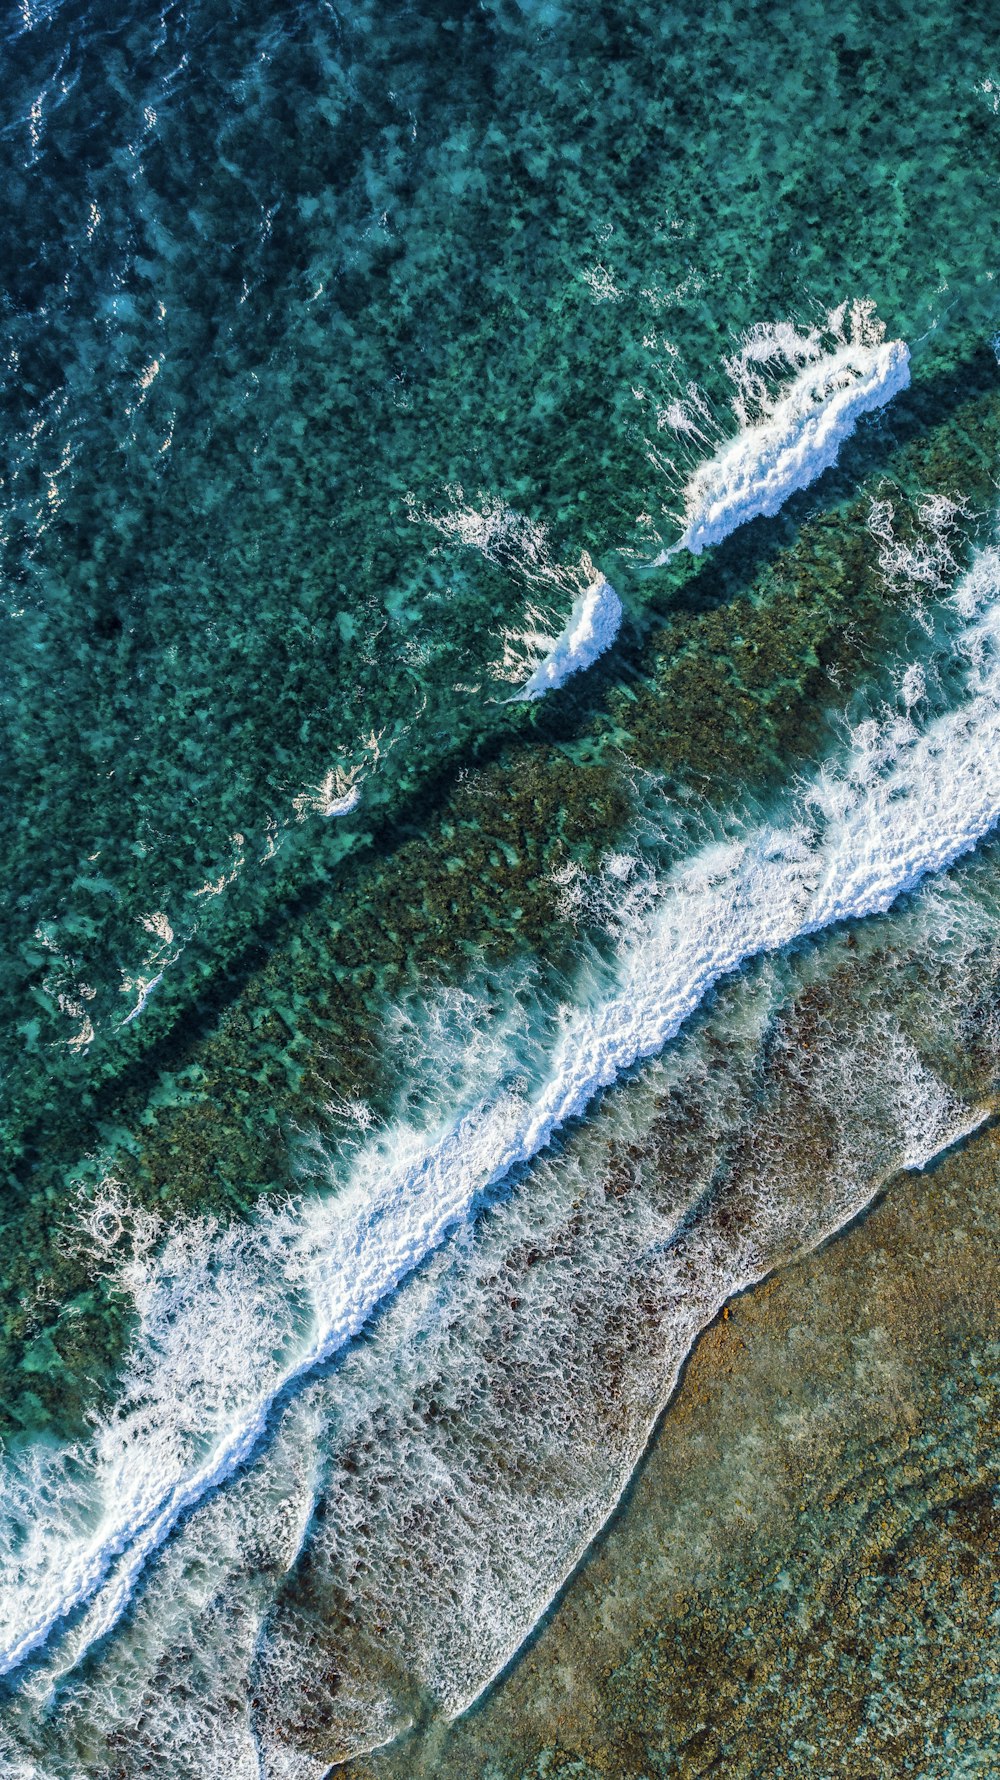 Vista aérea de las olas verdes y blancas del océano durante el día